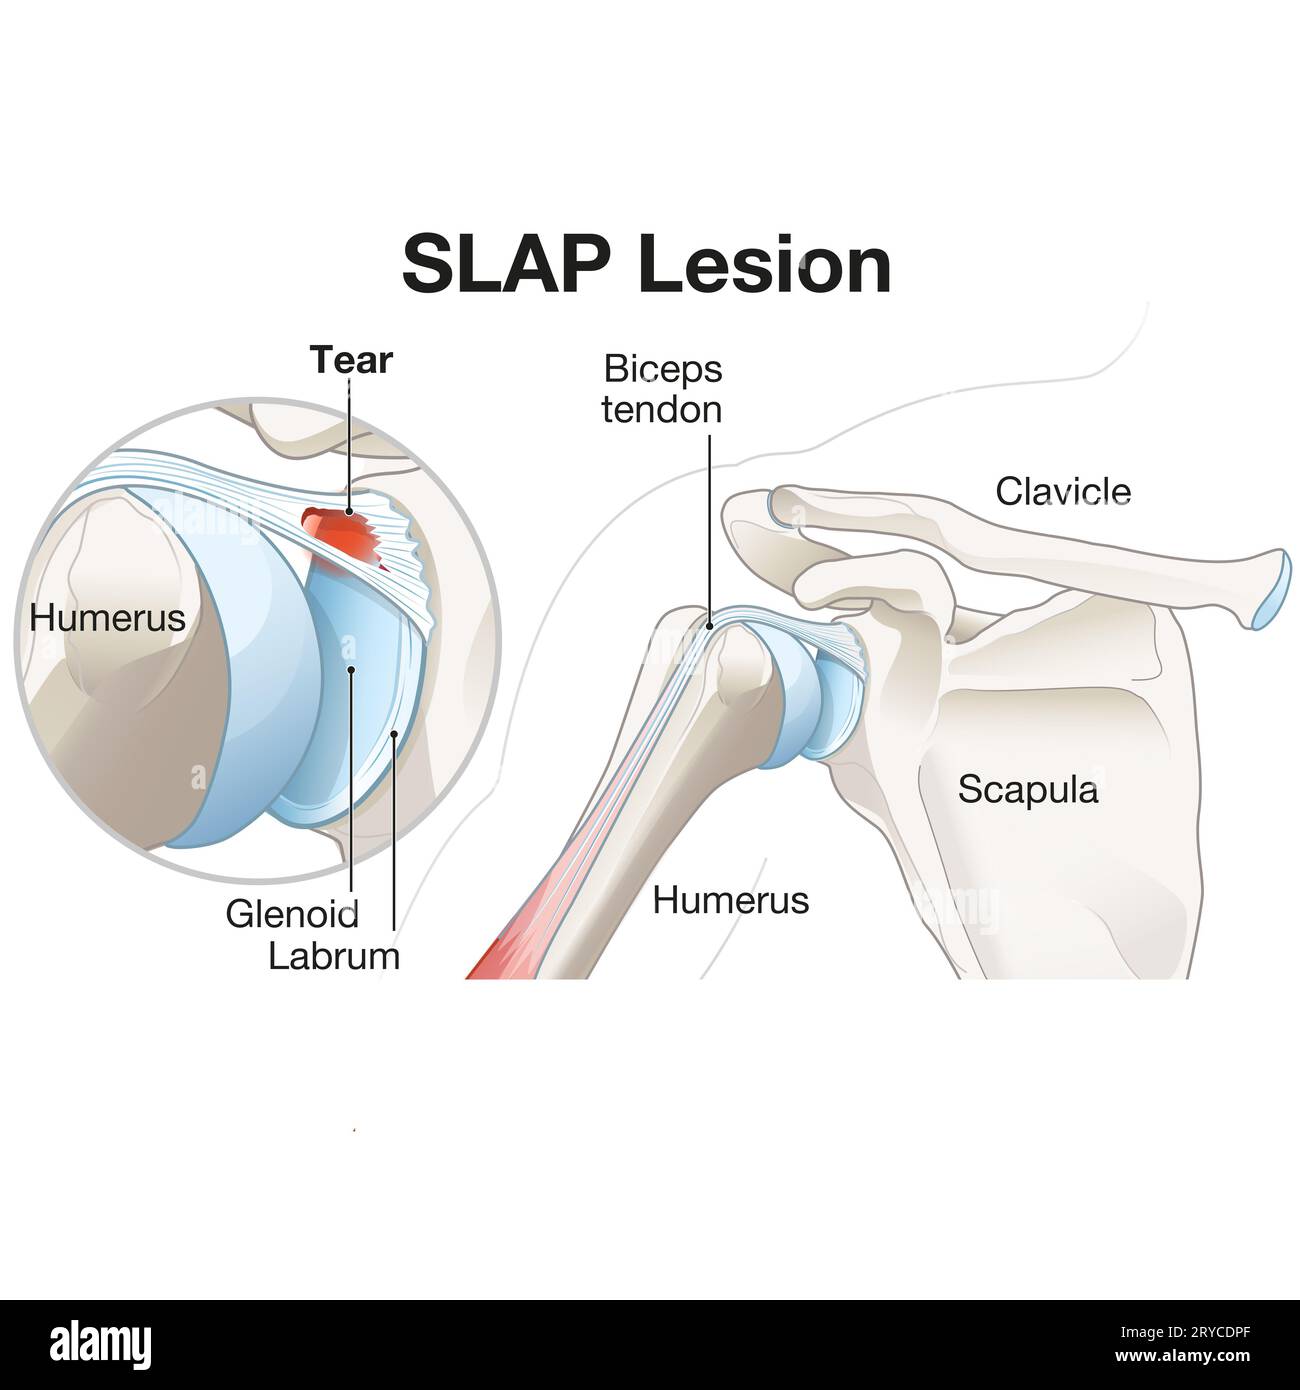 Una lesione DA SCHIAFFO nella spalla si riferisce a una lesione al labbro superiore, spesso causata da traumi o uso eccessivo, con conseguente dolore, instabilità e riduzione Foto Stock